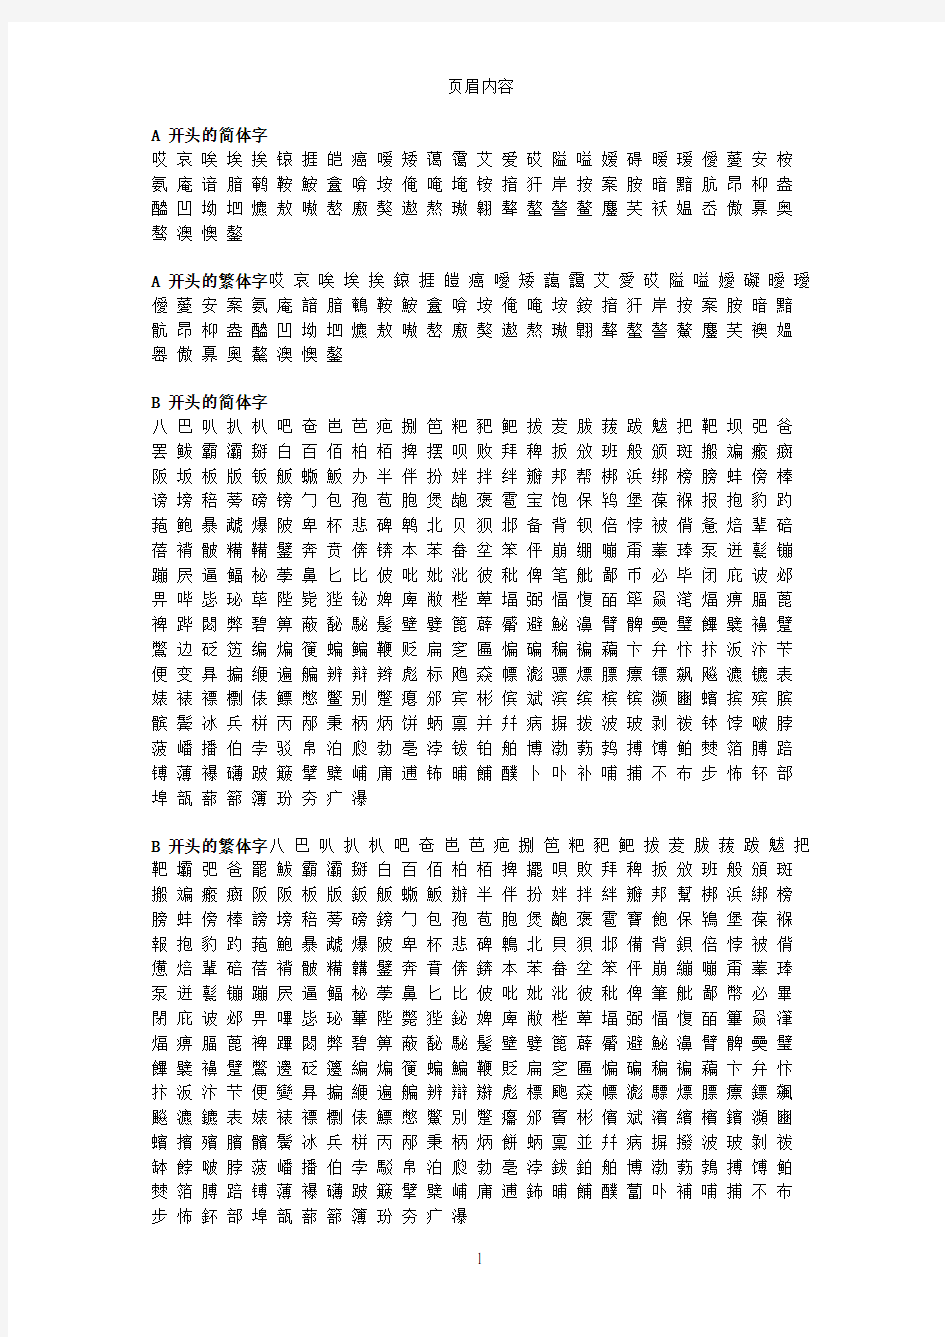 汉字繁体字简体字对照表